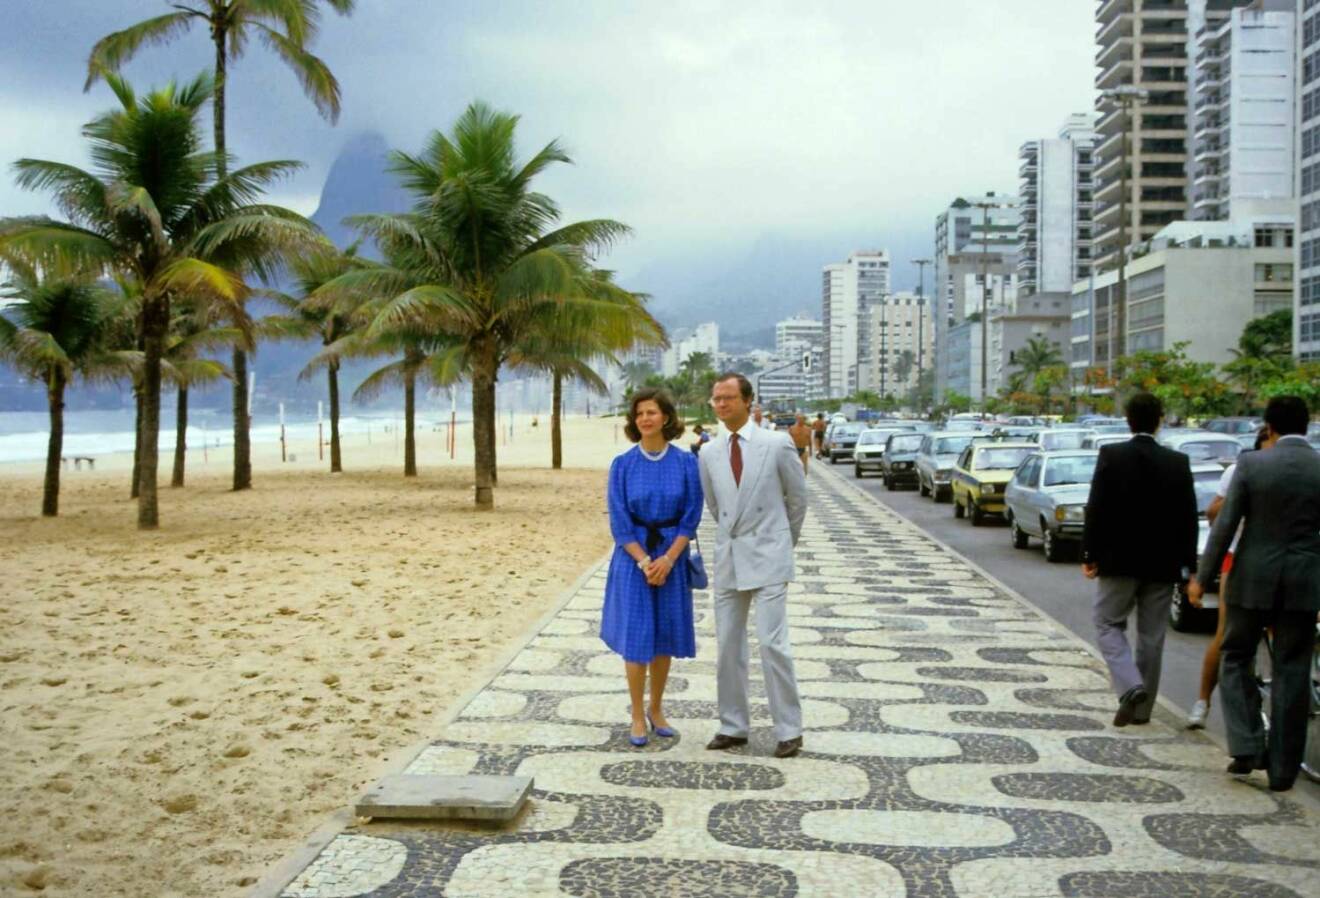 Älskade Brasilien! Ett av de länder där drottningen naturligtvis känner sig riktigt hemmastadd. Här tar kungen och drottningen en promenad i Rio de Janeiro 1984.